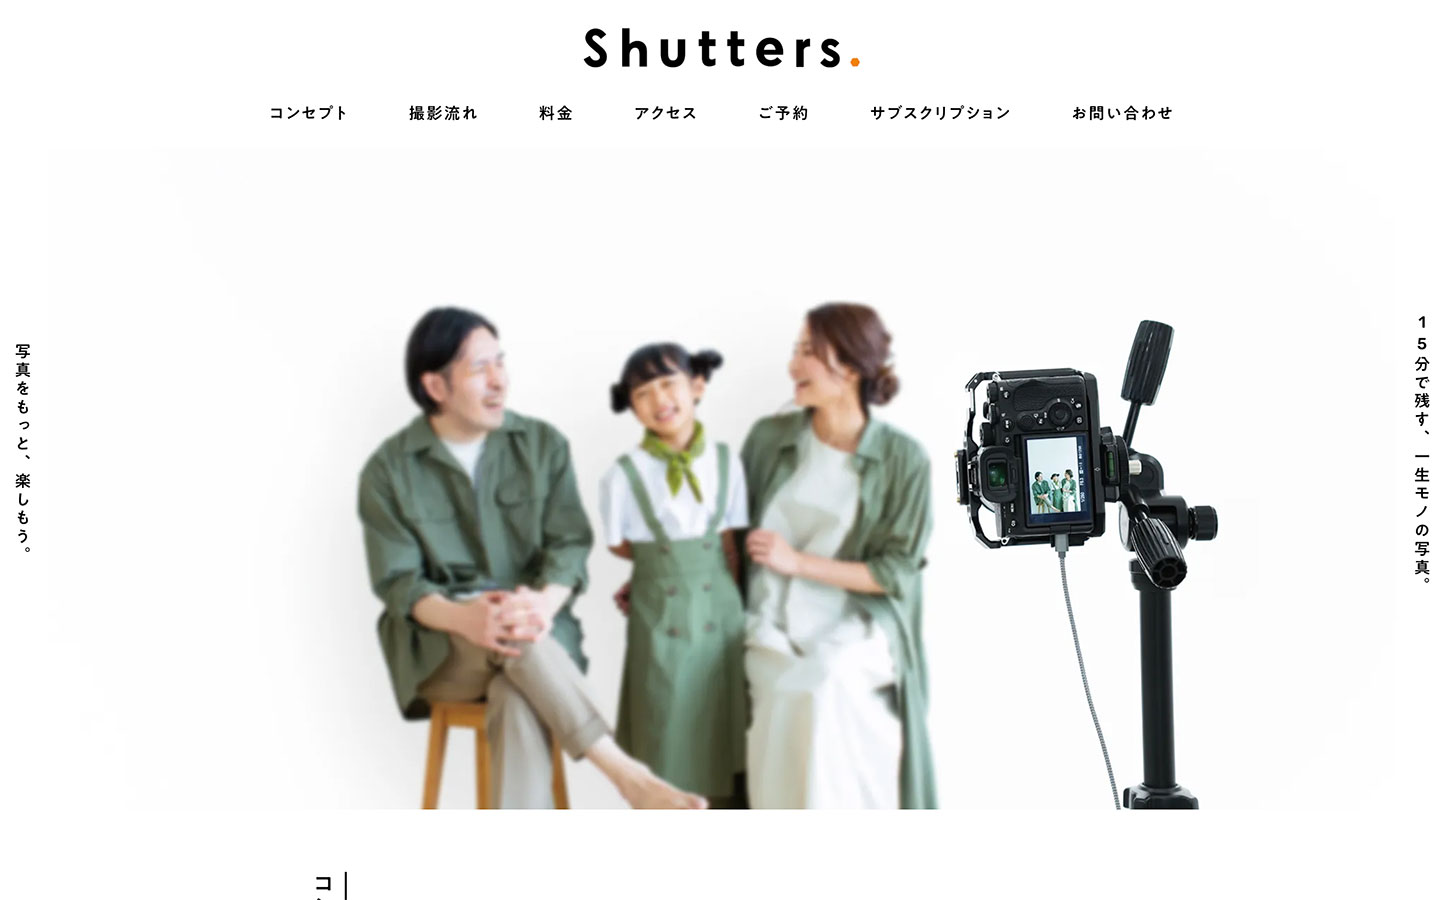 Shutters セルフ写真館